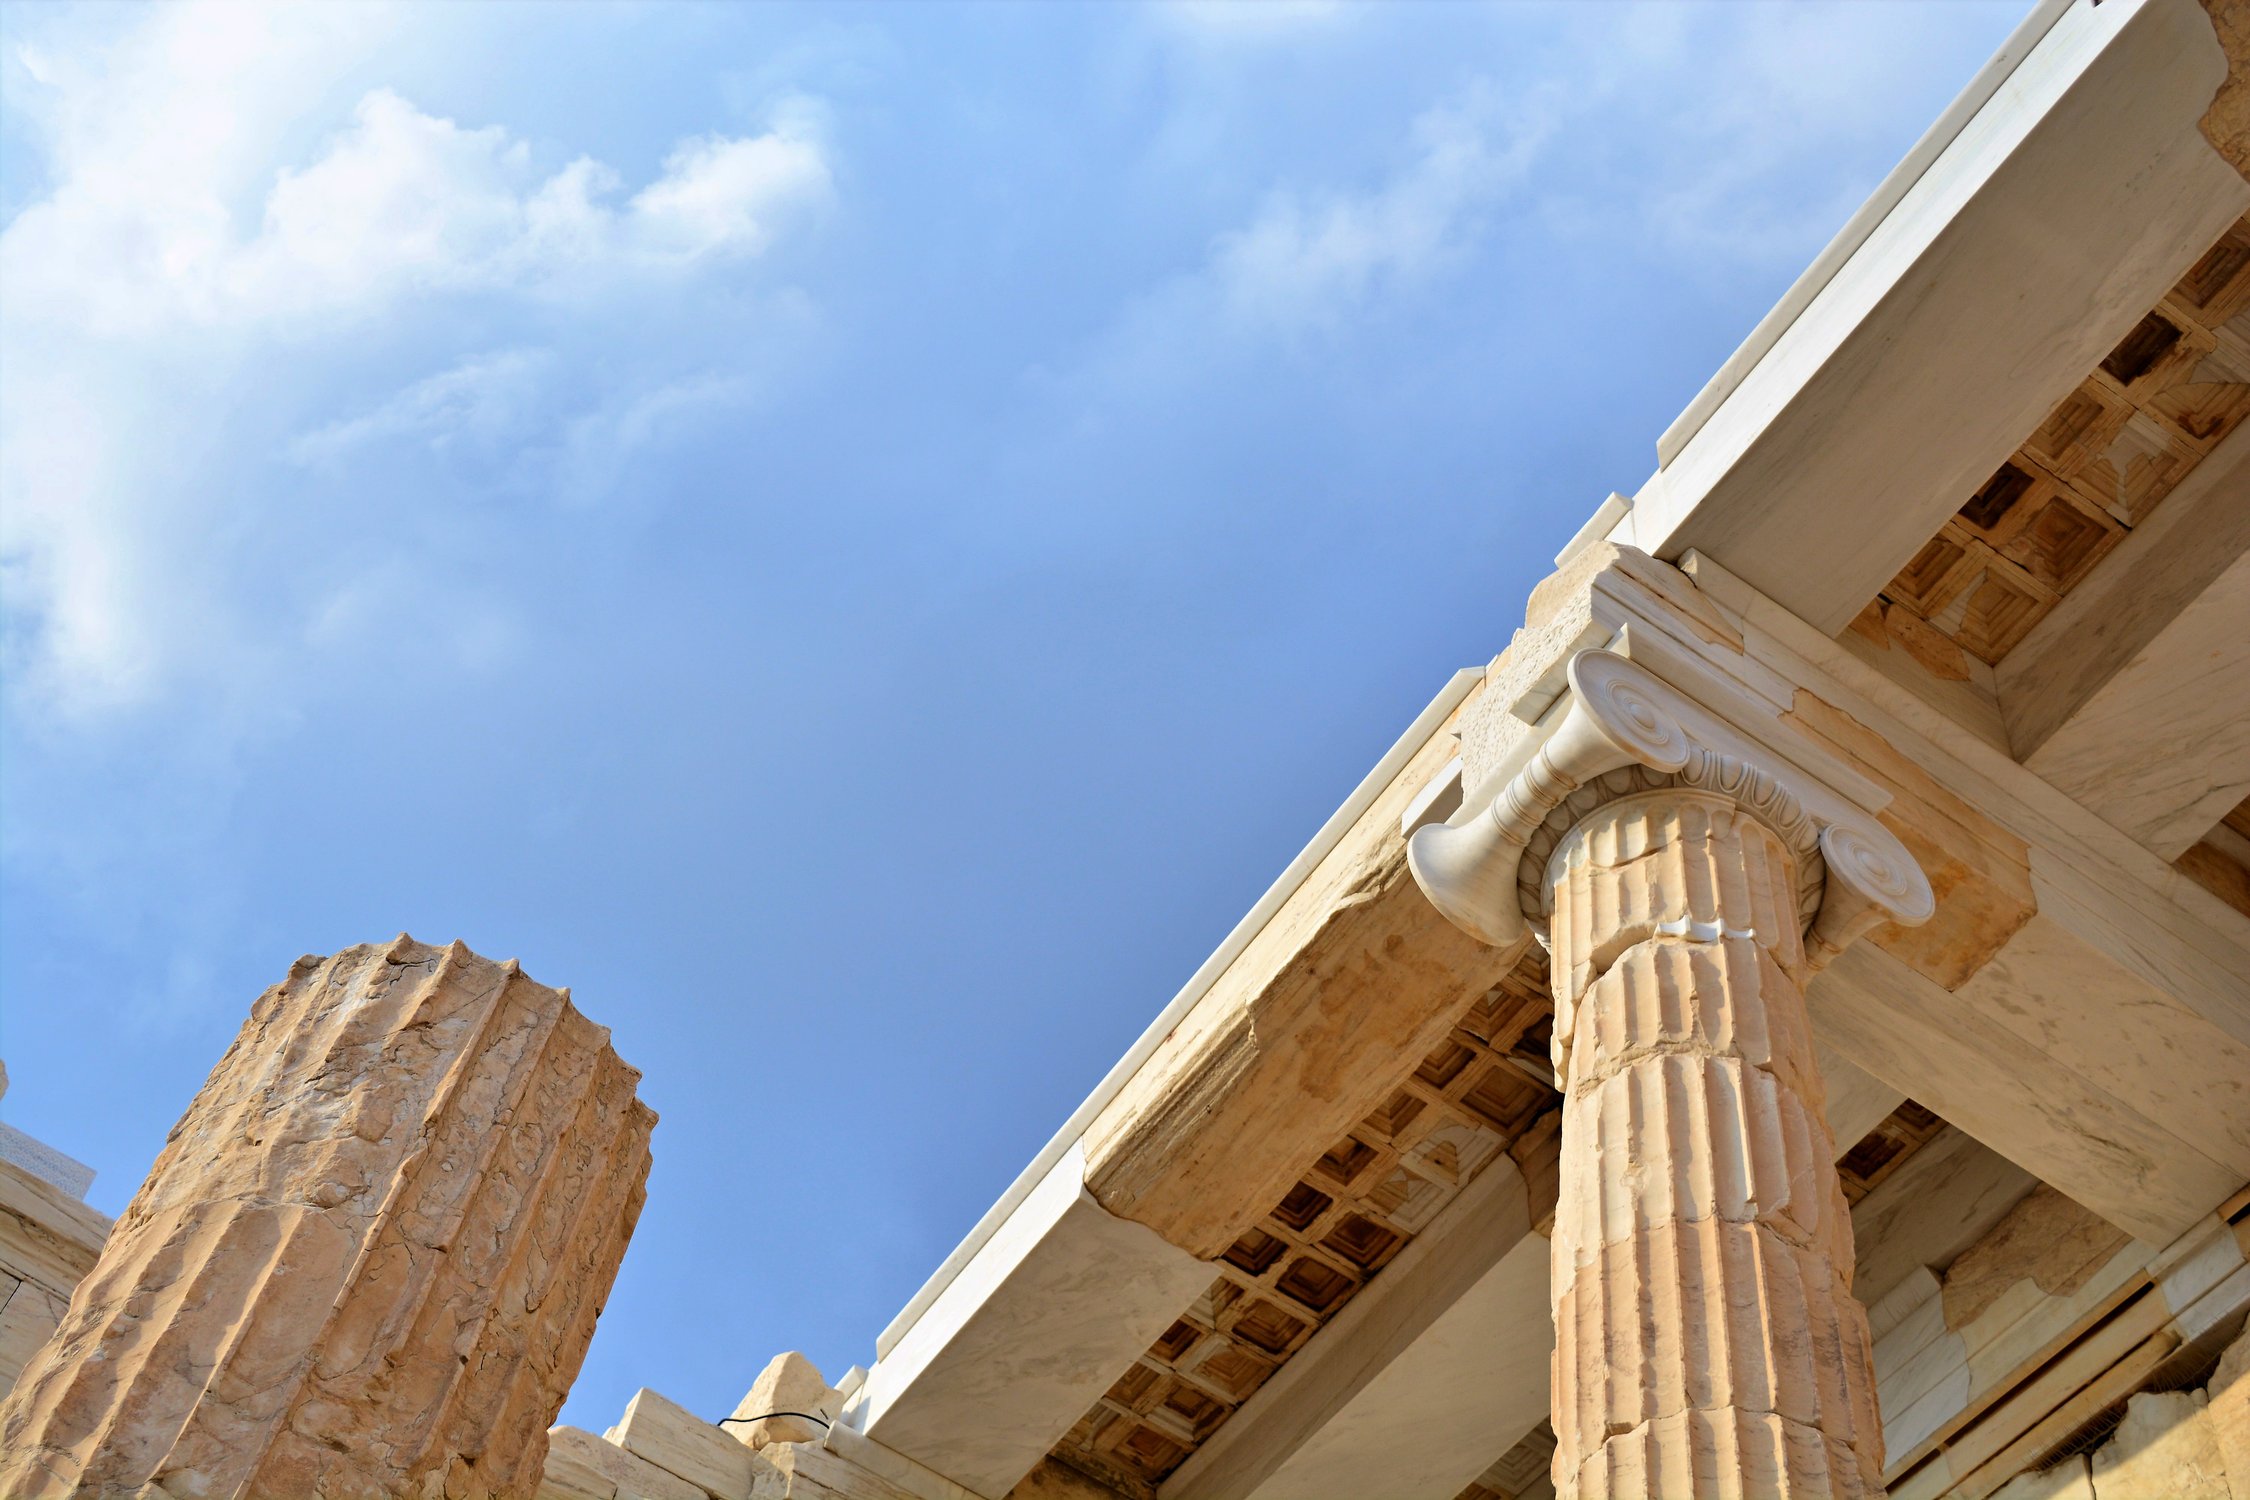 Пропилеи Афинского Акрополя